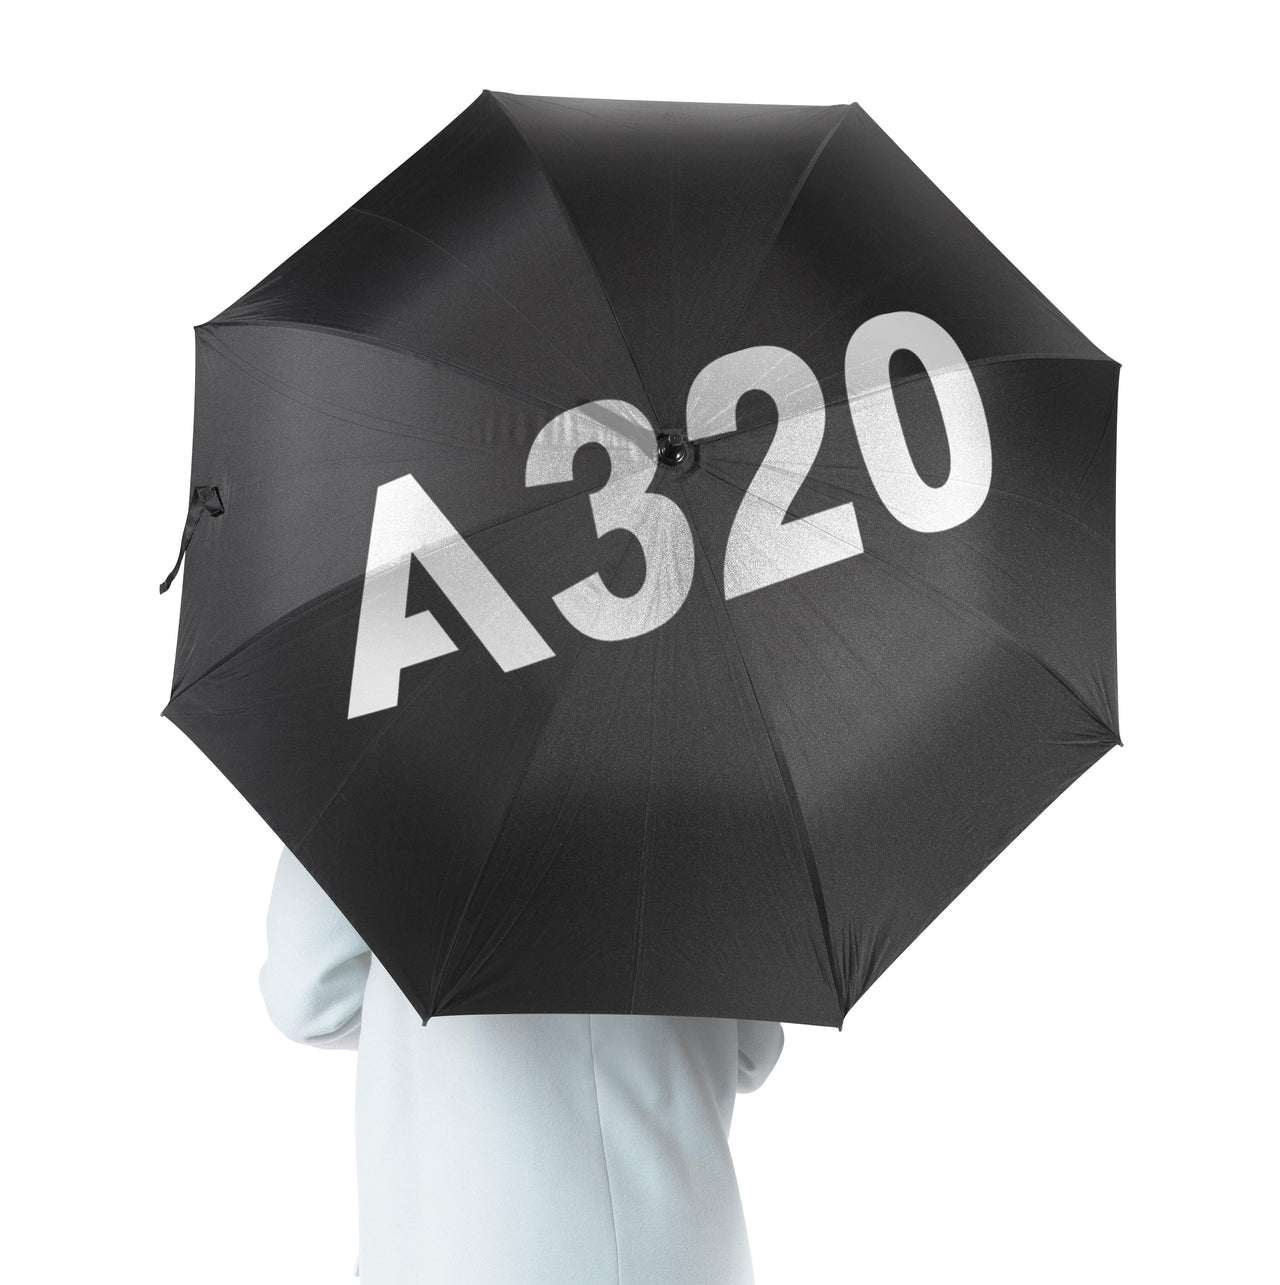 A320 Flat Text Designed Umbrella